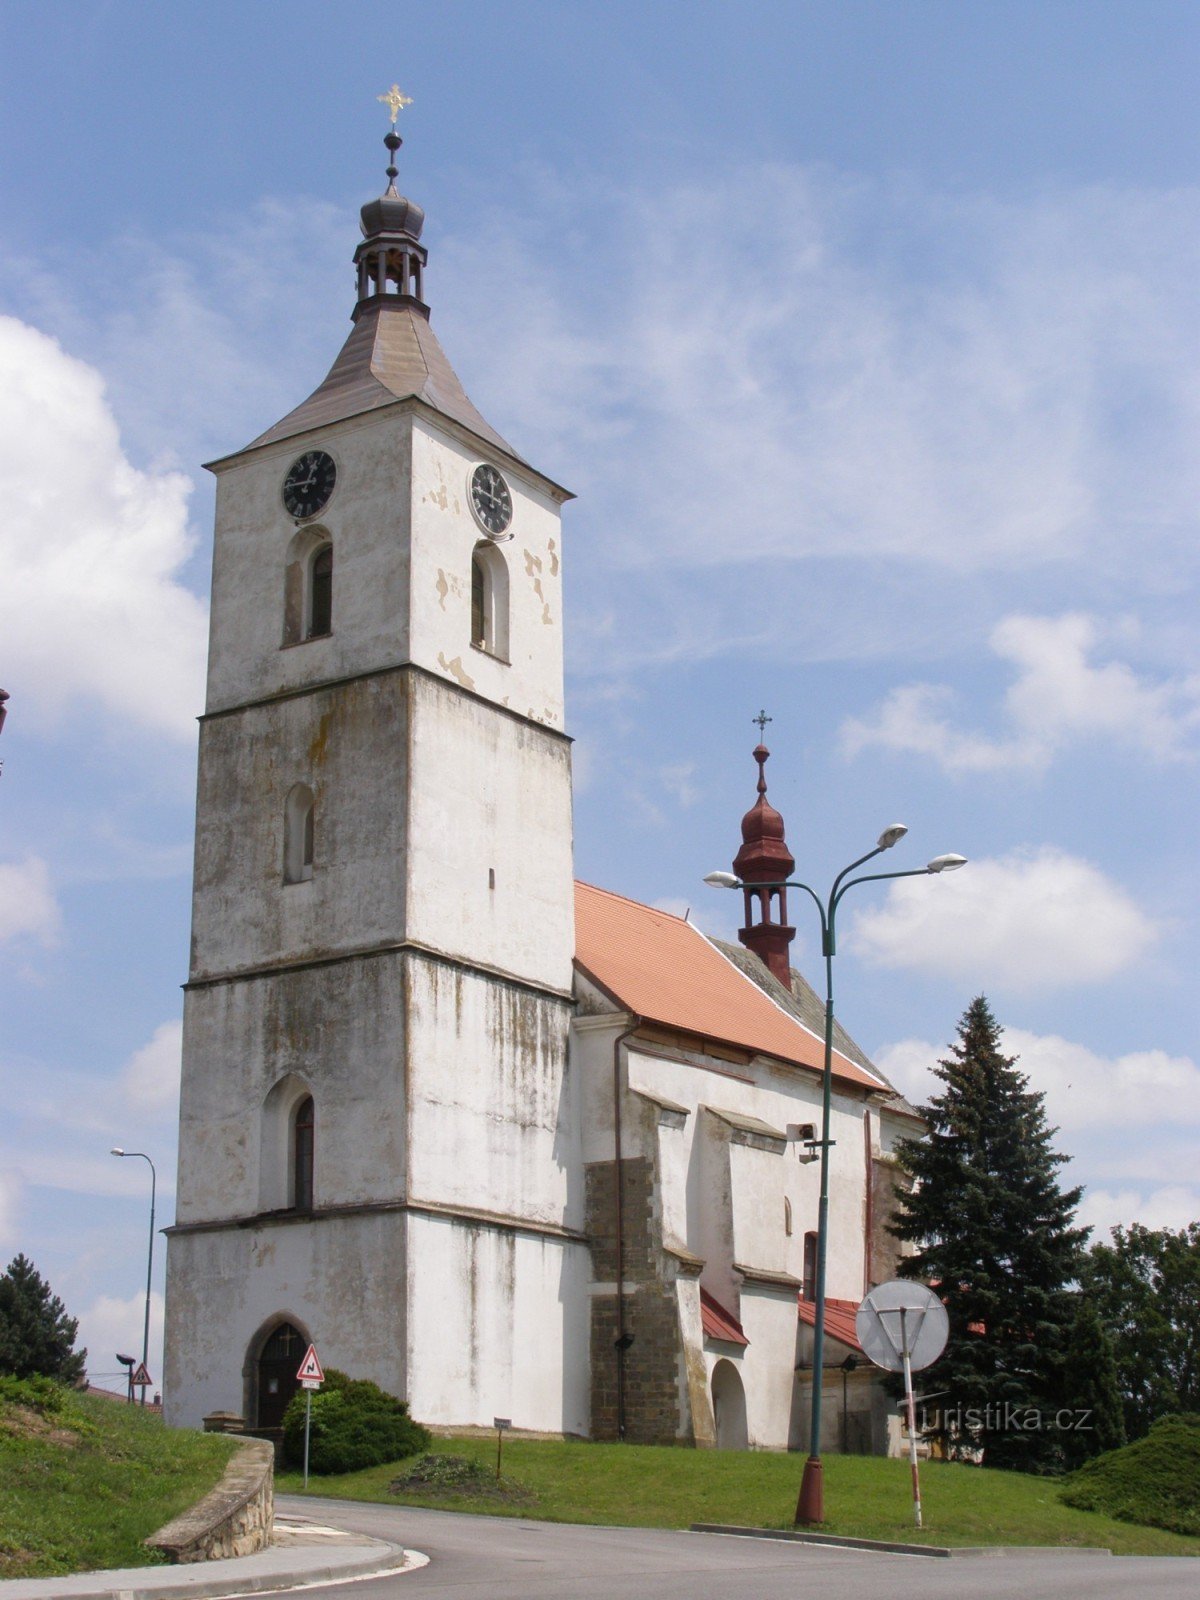 Starý Bydžov - Szent István-templom. Prokopius